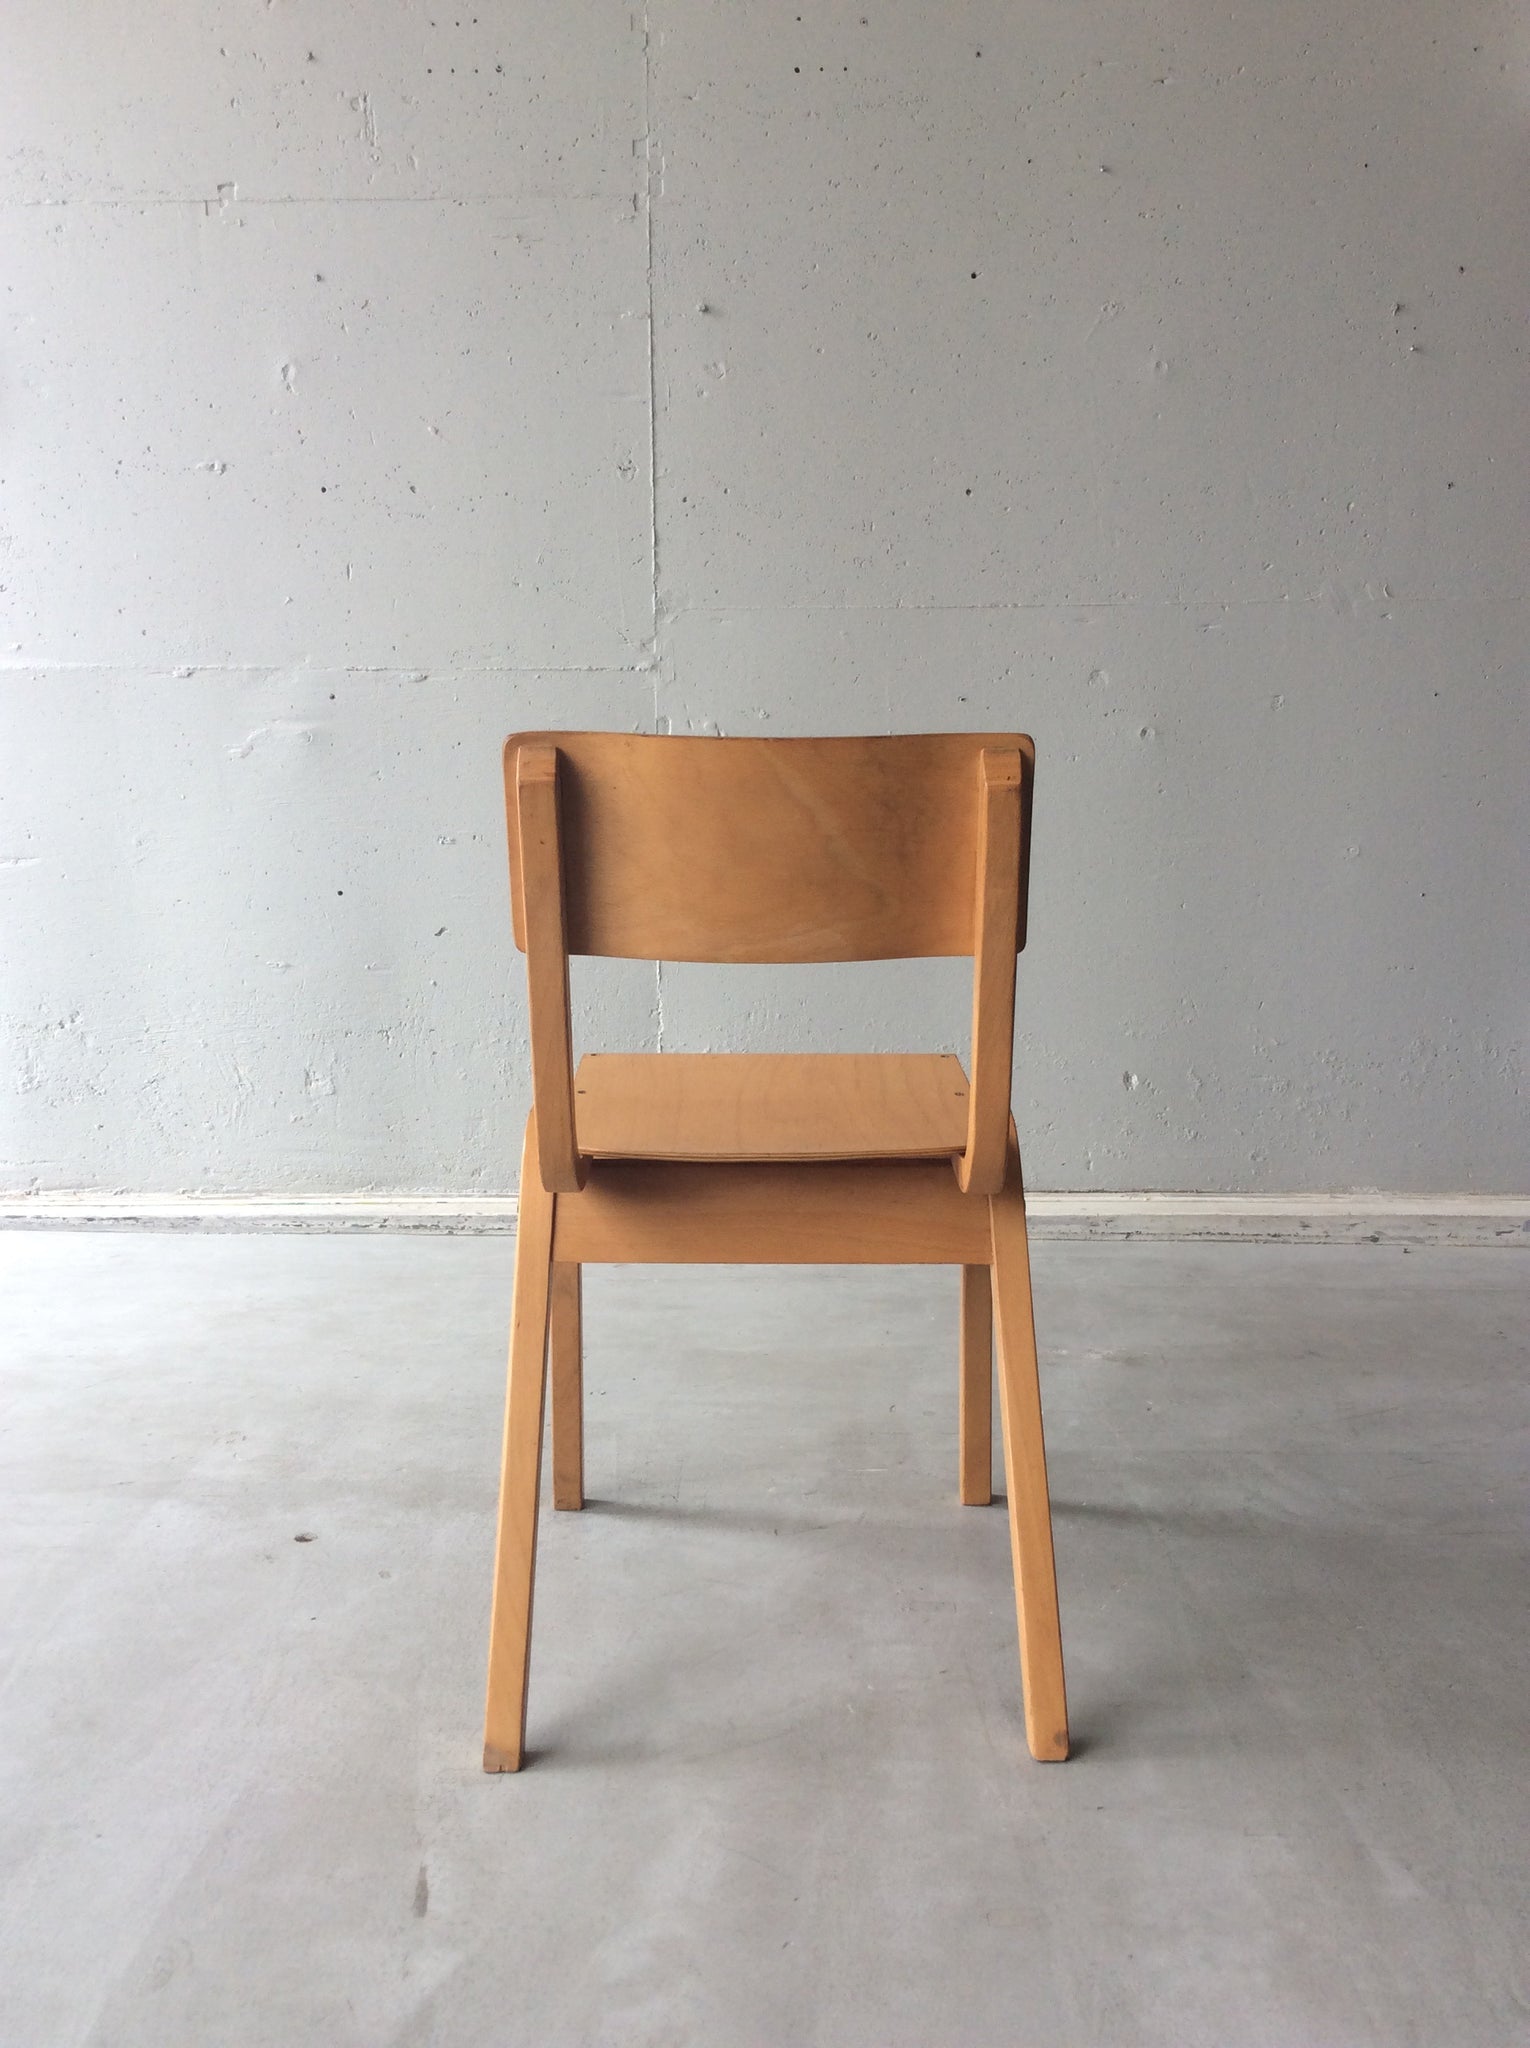 プライウッド スタッキング チェア / plywood stacking chair #0200